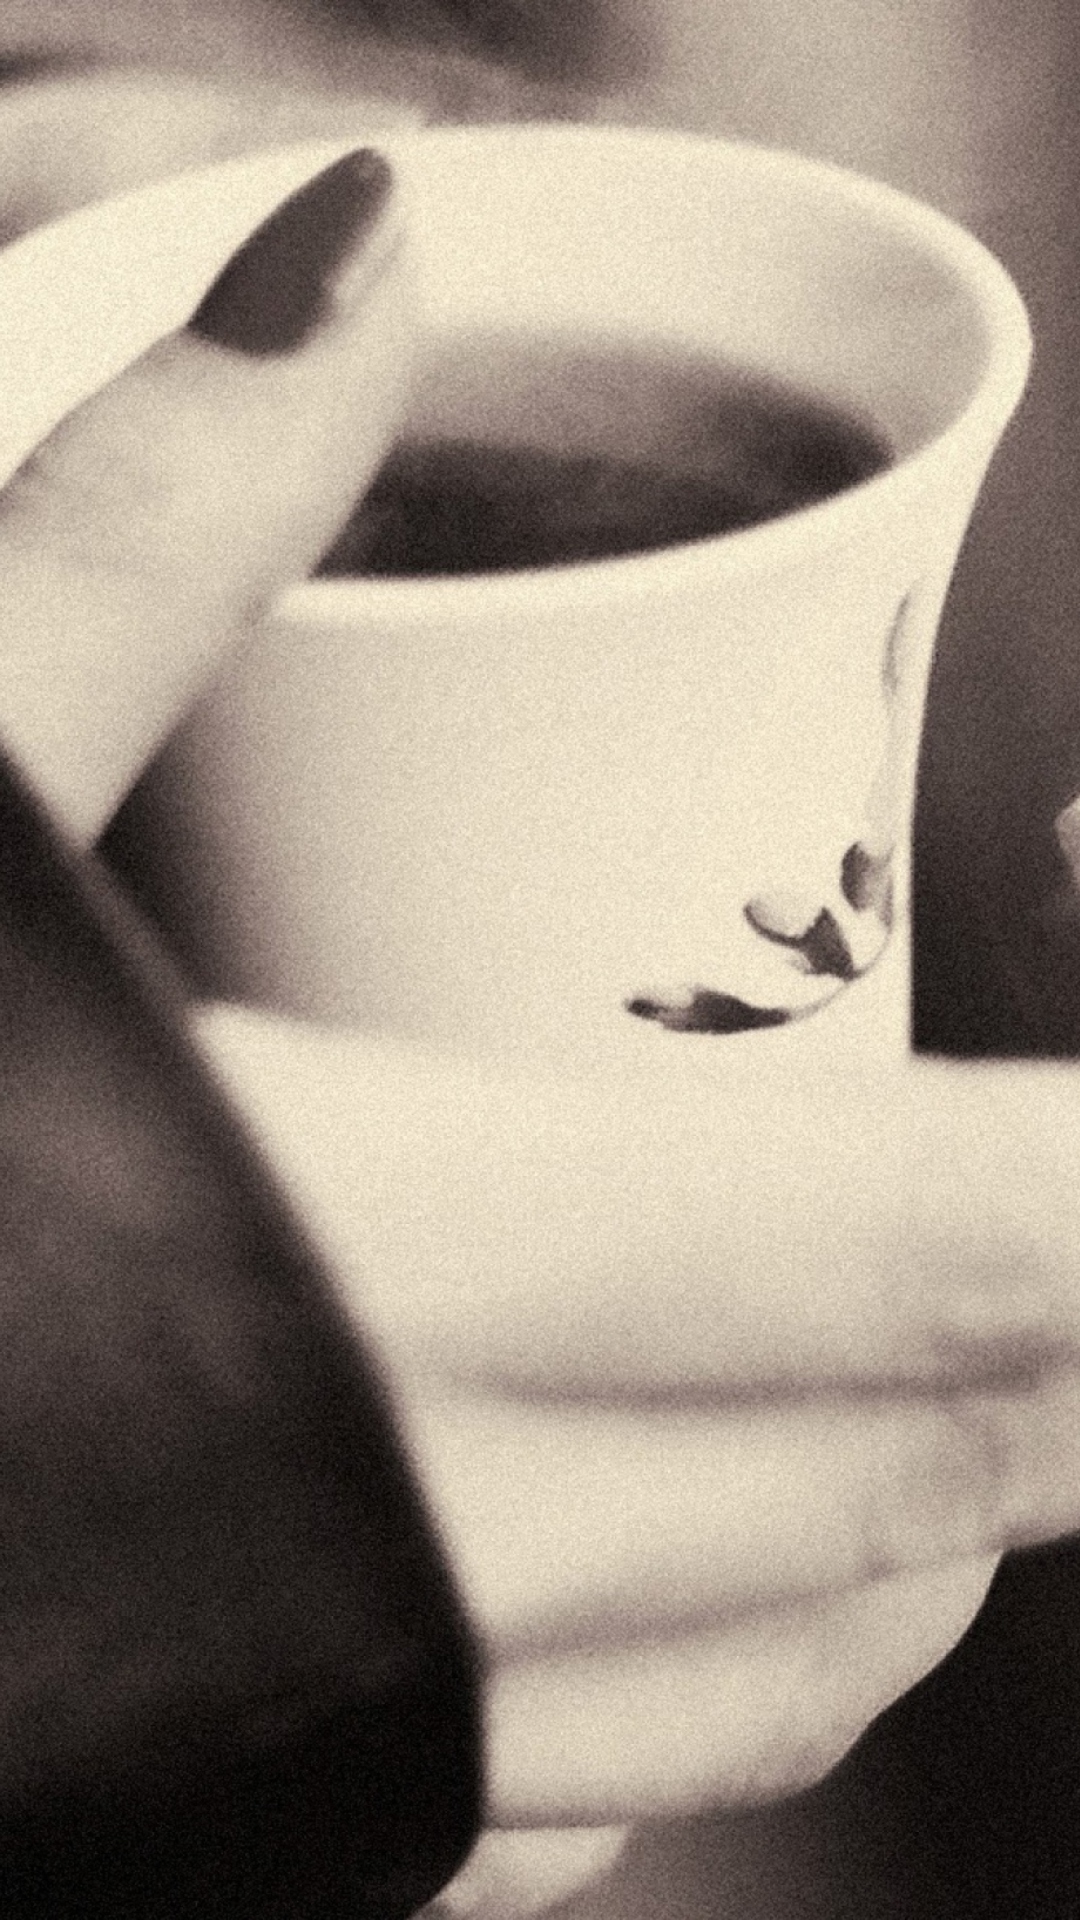 Das Hot Coffee In Her Hands Wallpaper 1080x1920